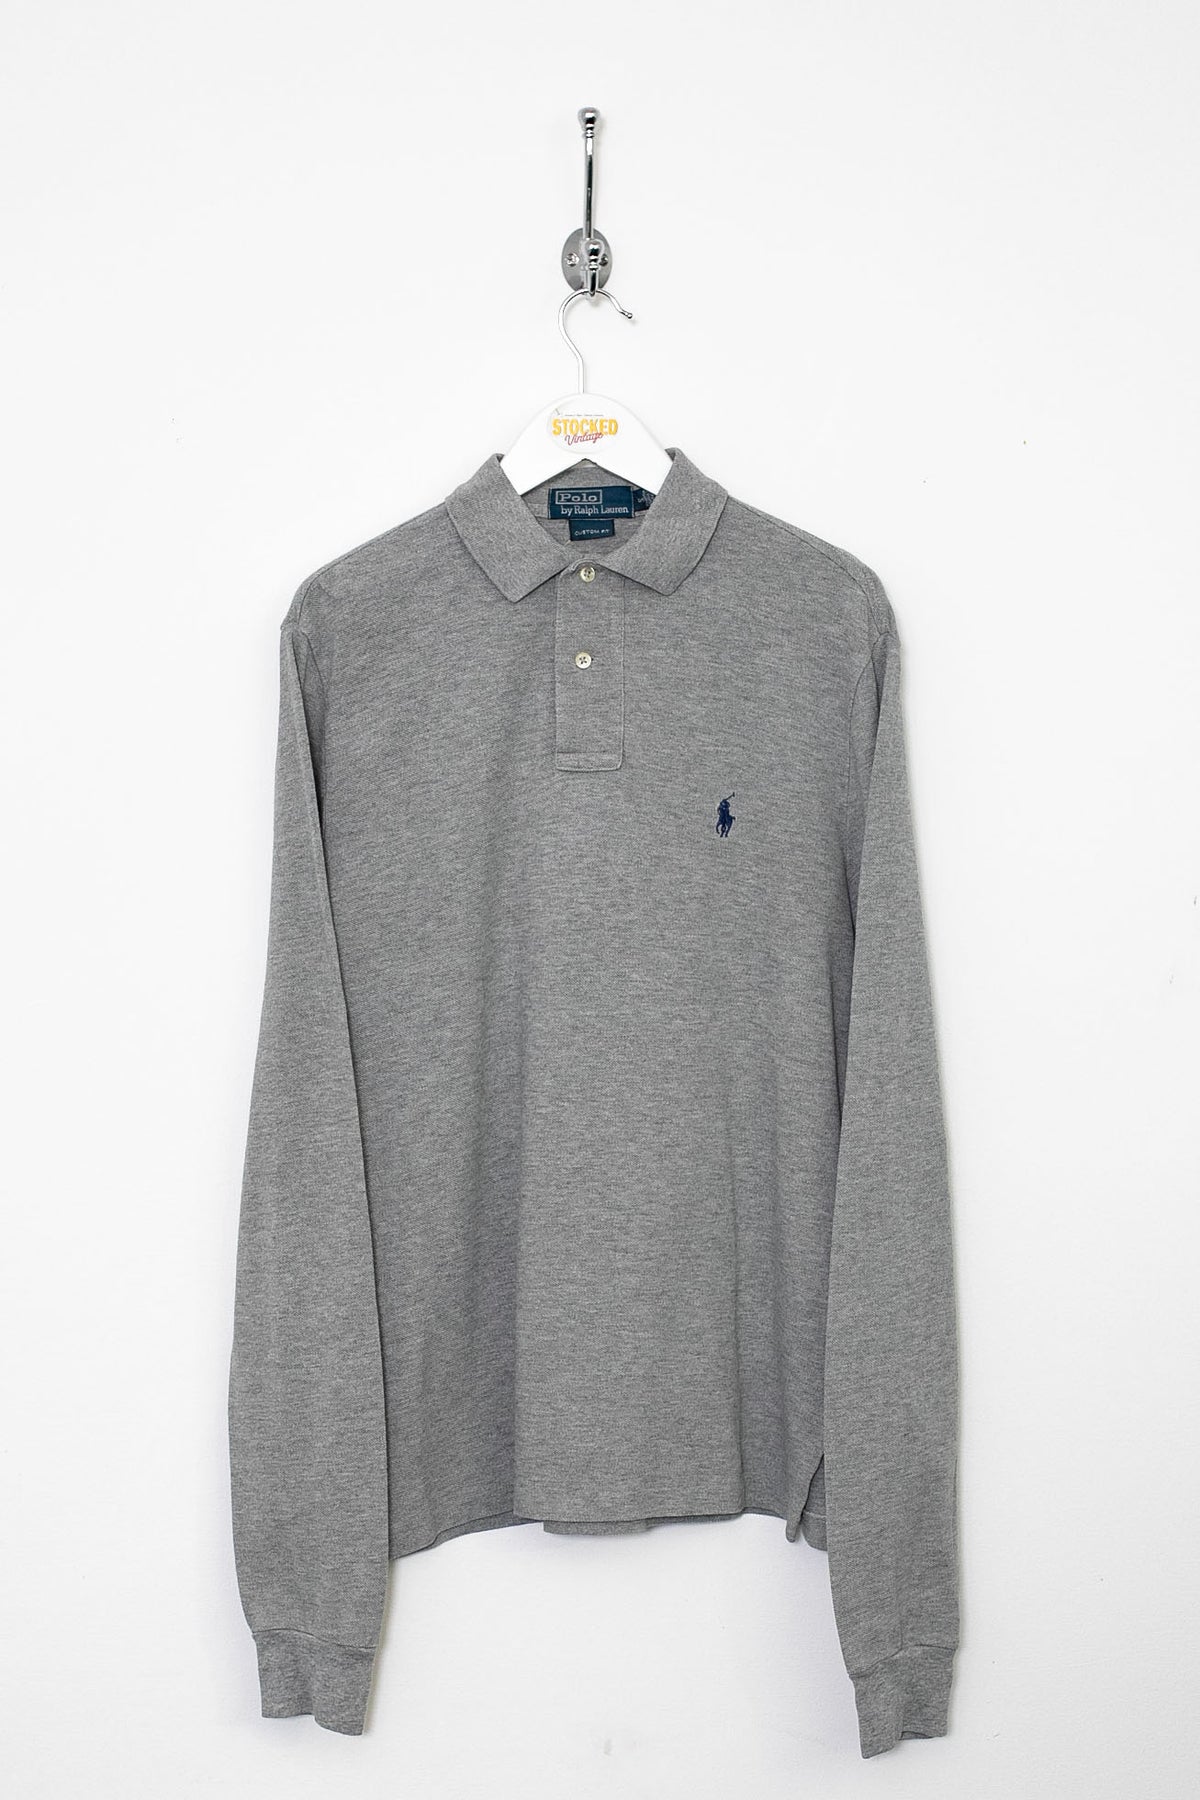 Ralph Lauren Long Sleeve Polo Shirt (S)